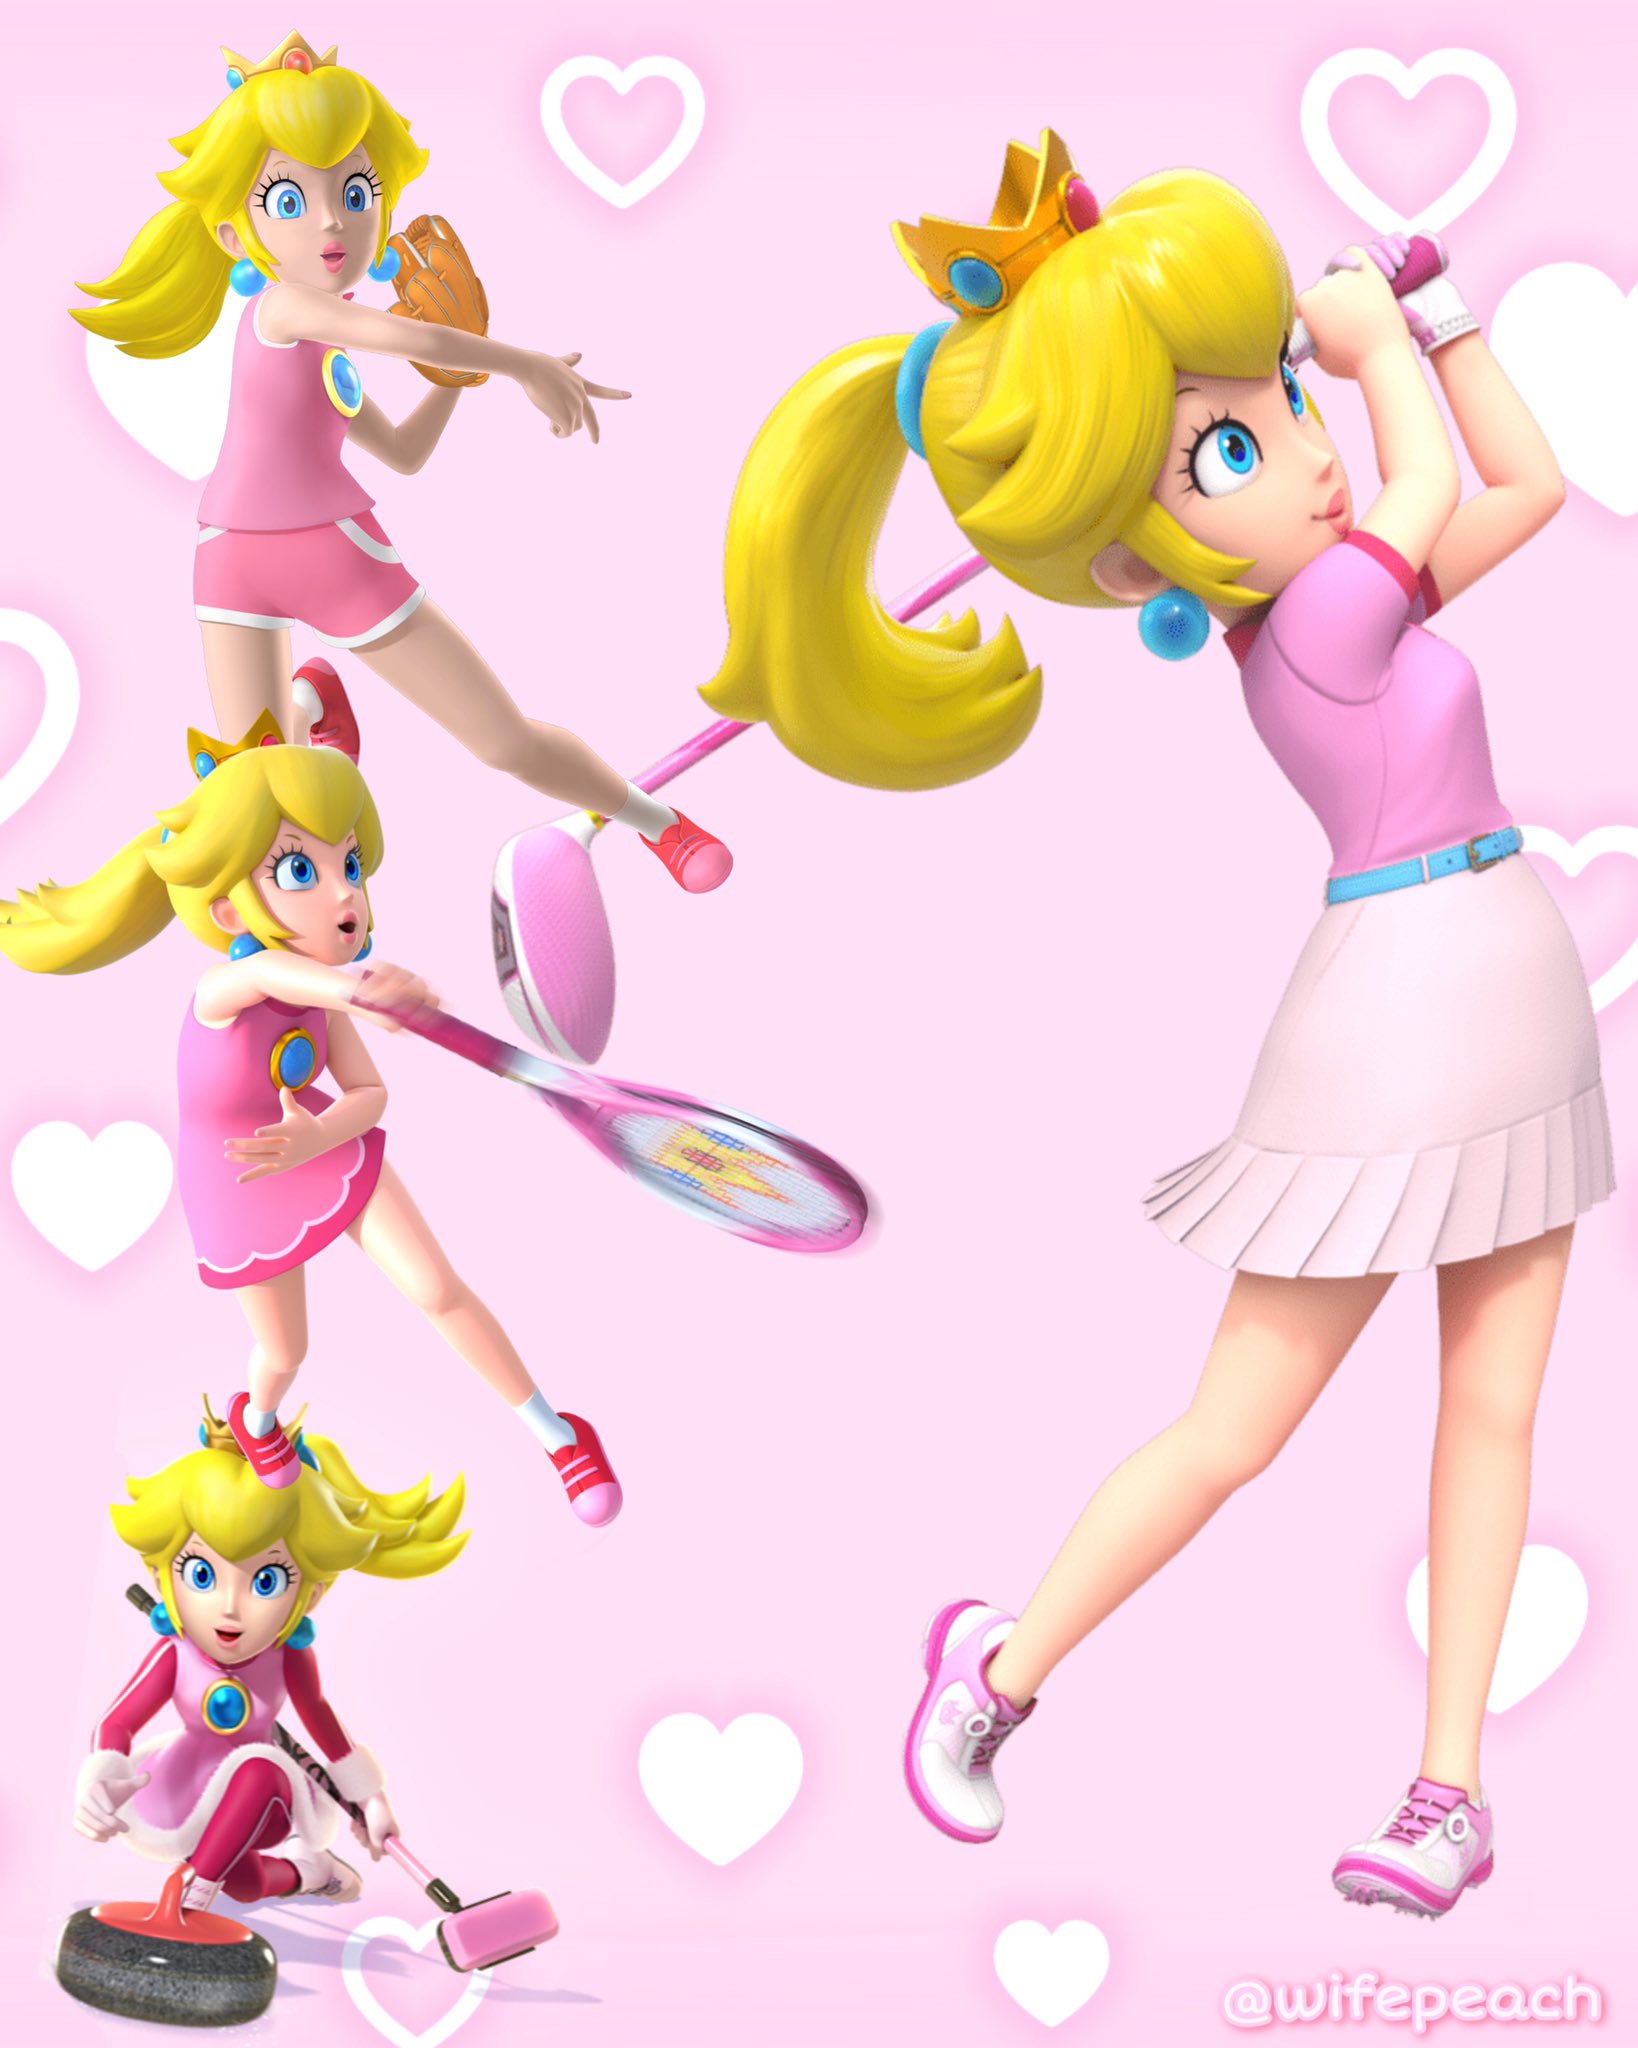 Lexi Bun on X: Peach is a sports queen!! 💖 #PrincessPeach #supermario  #Nintendo  / X